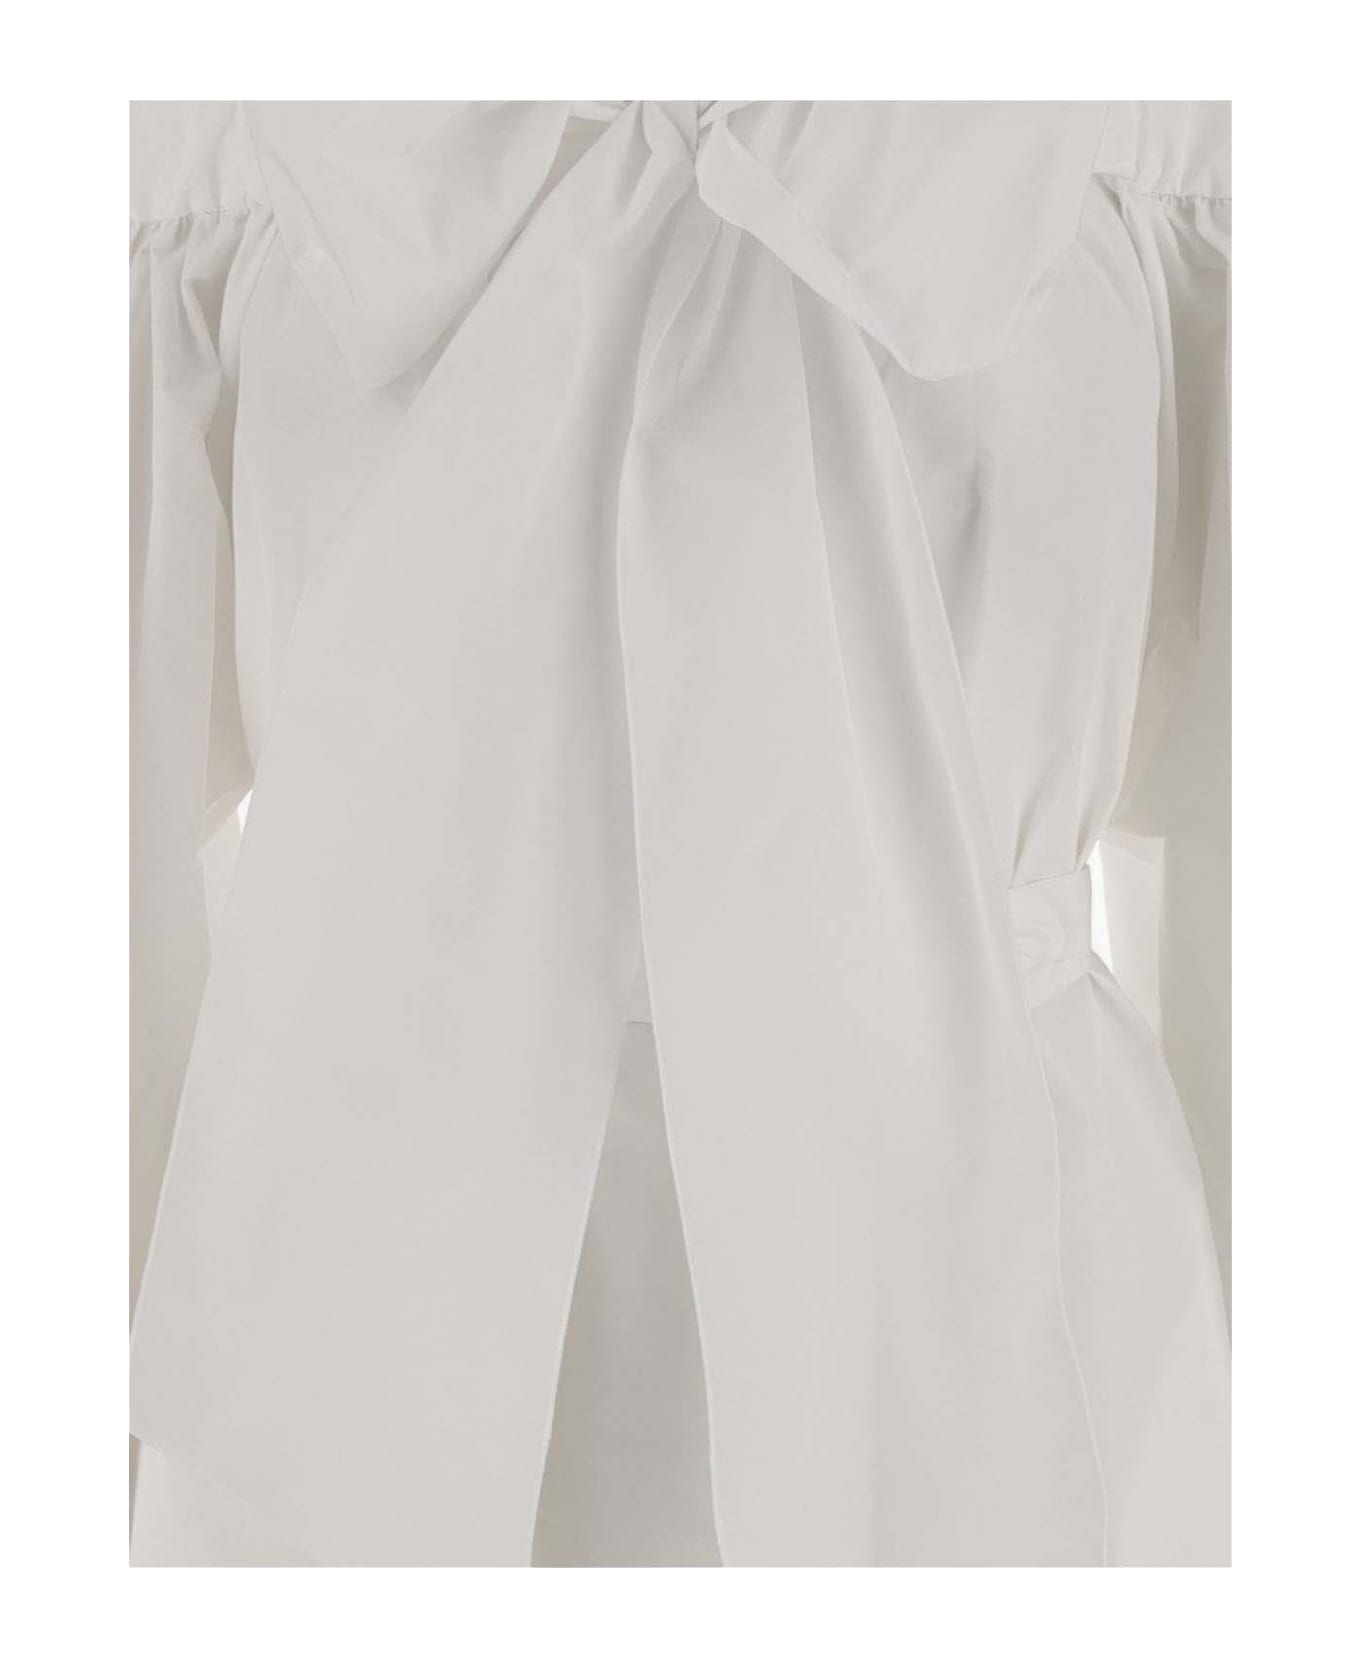 Patou Polyfaille Dress - White